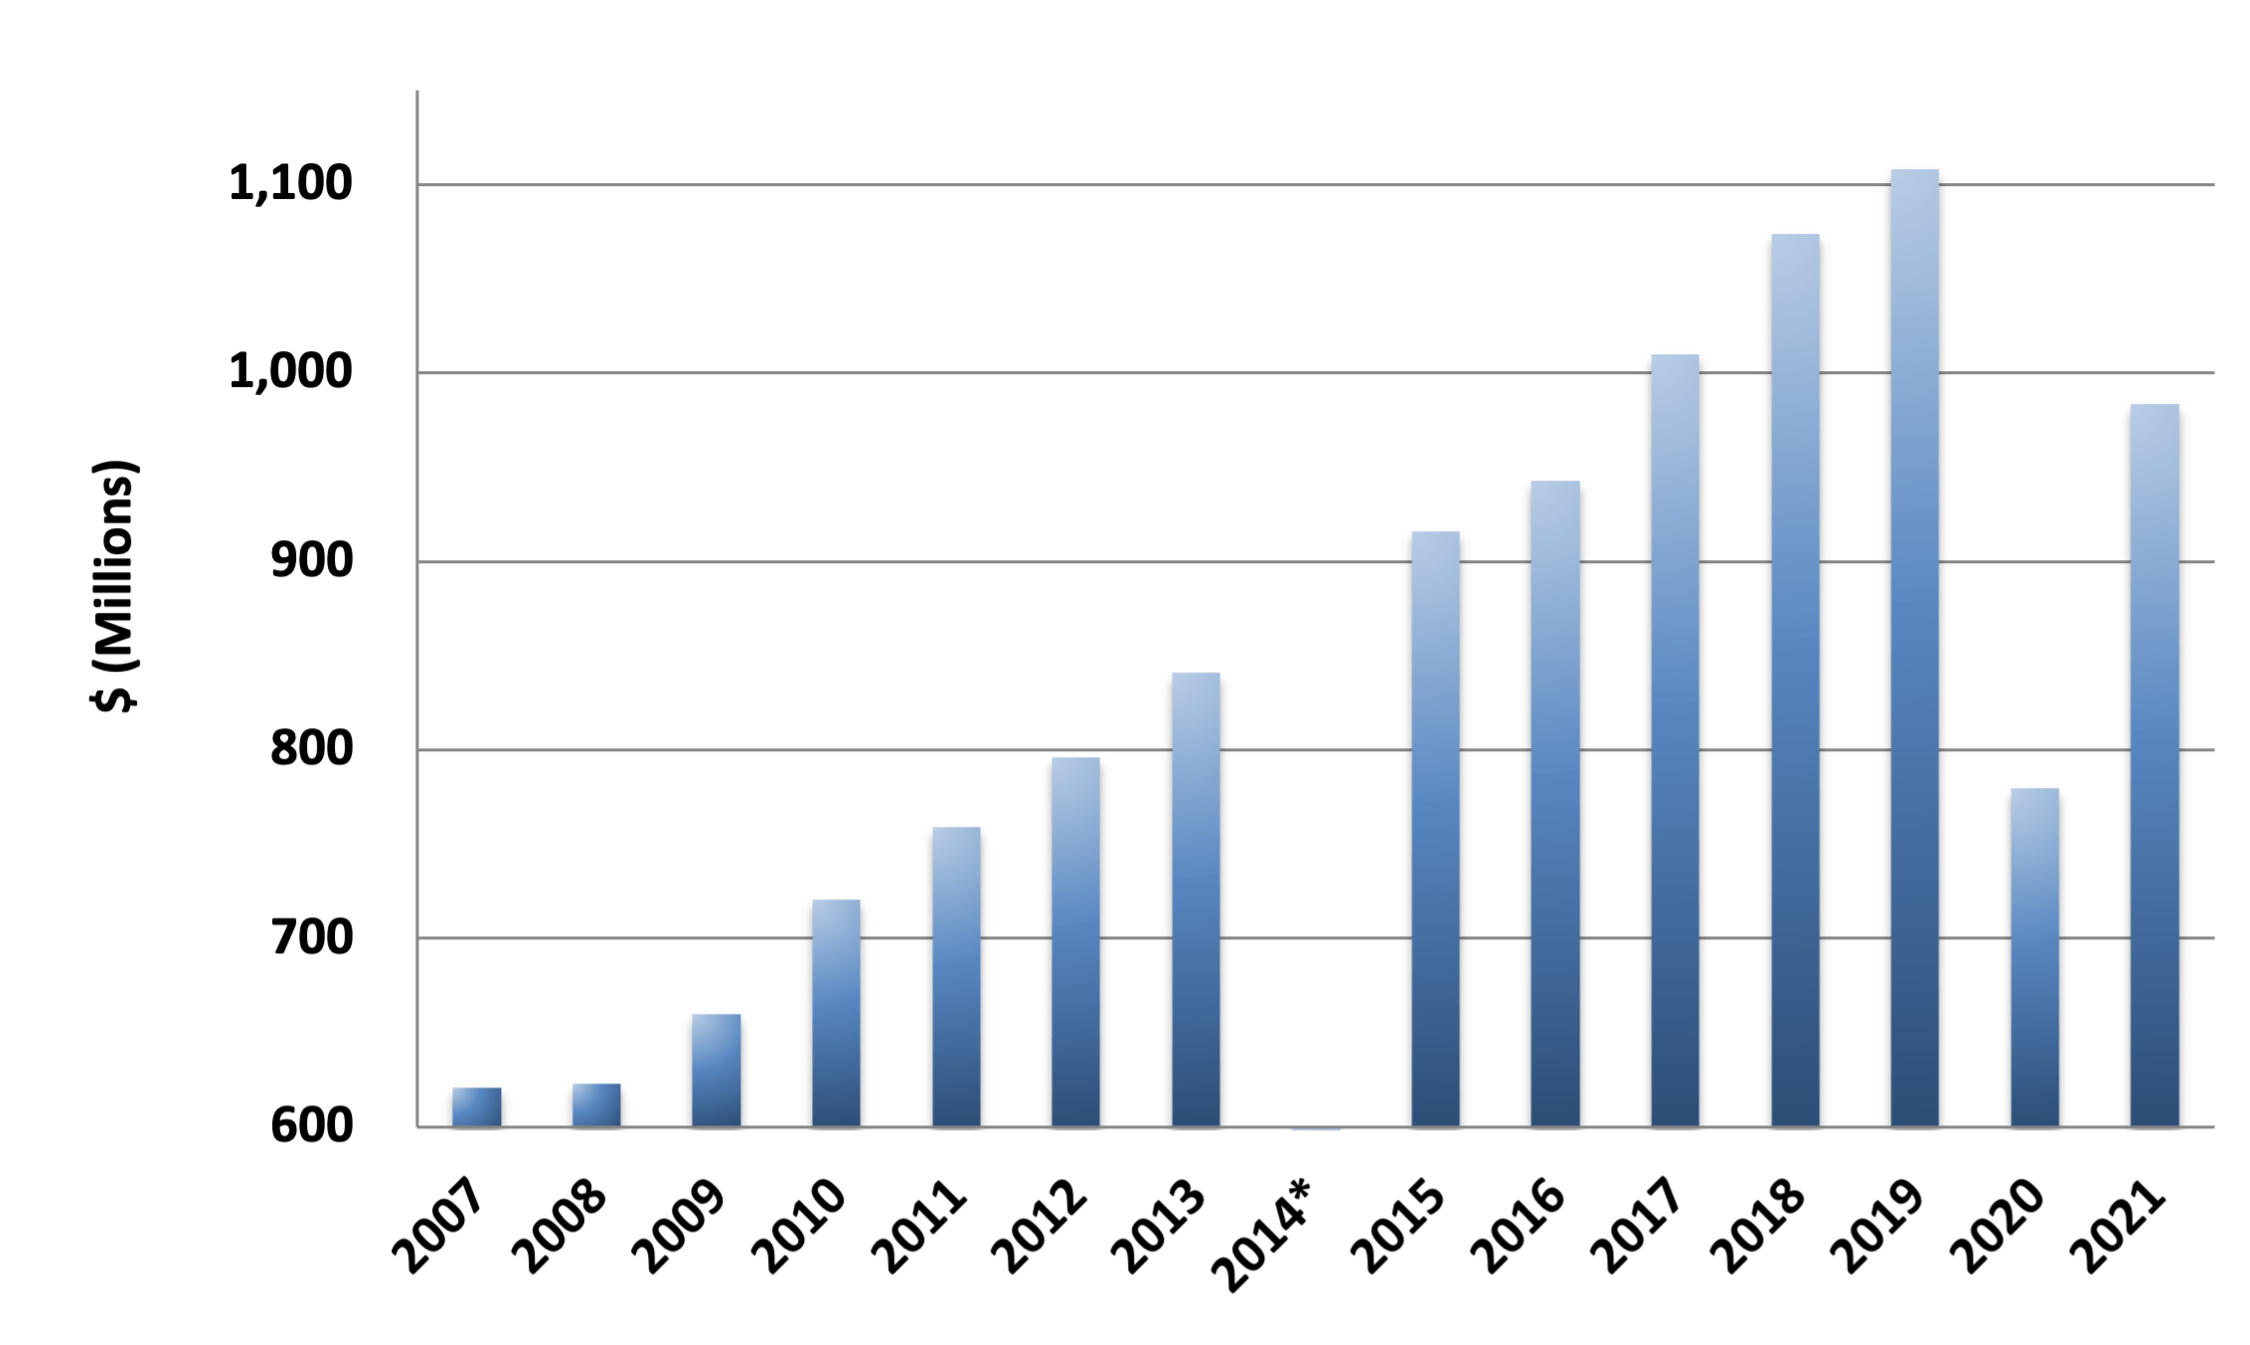 College Board's Revenue 2007 to 2021